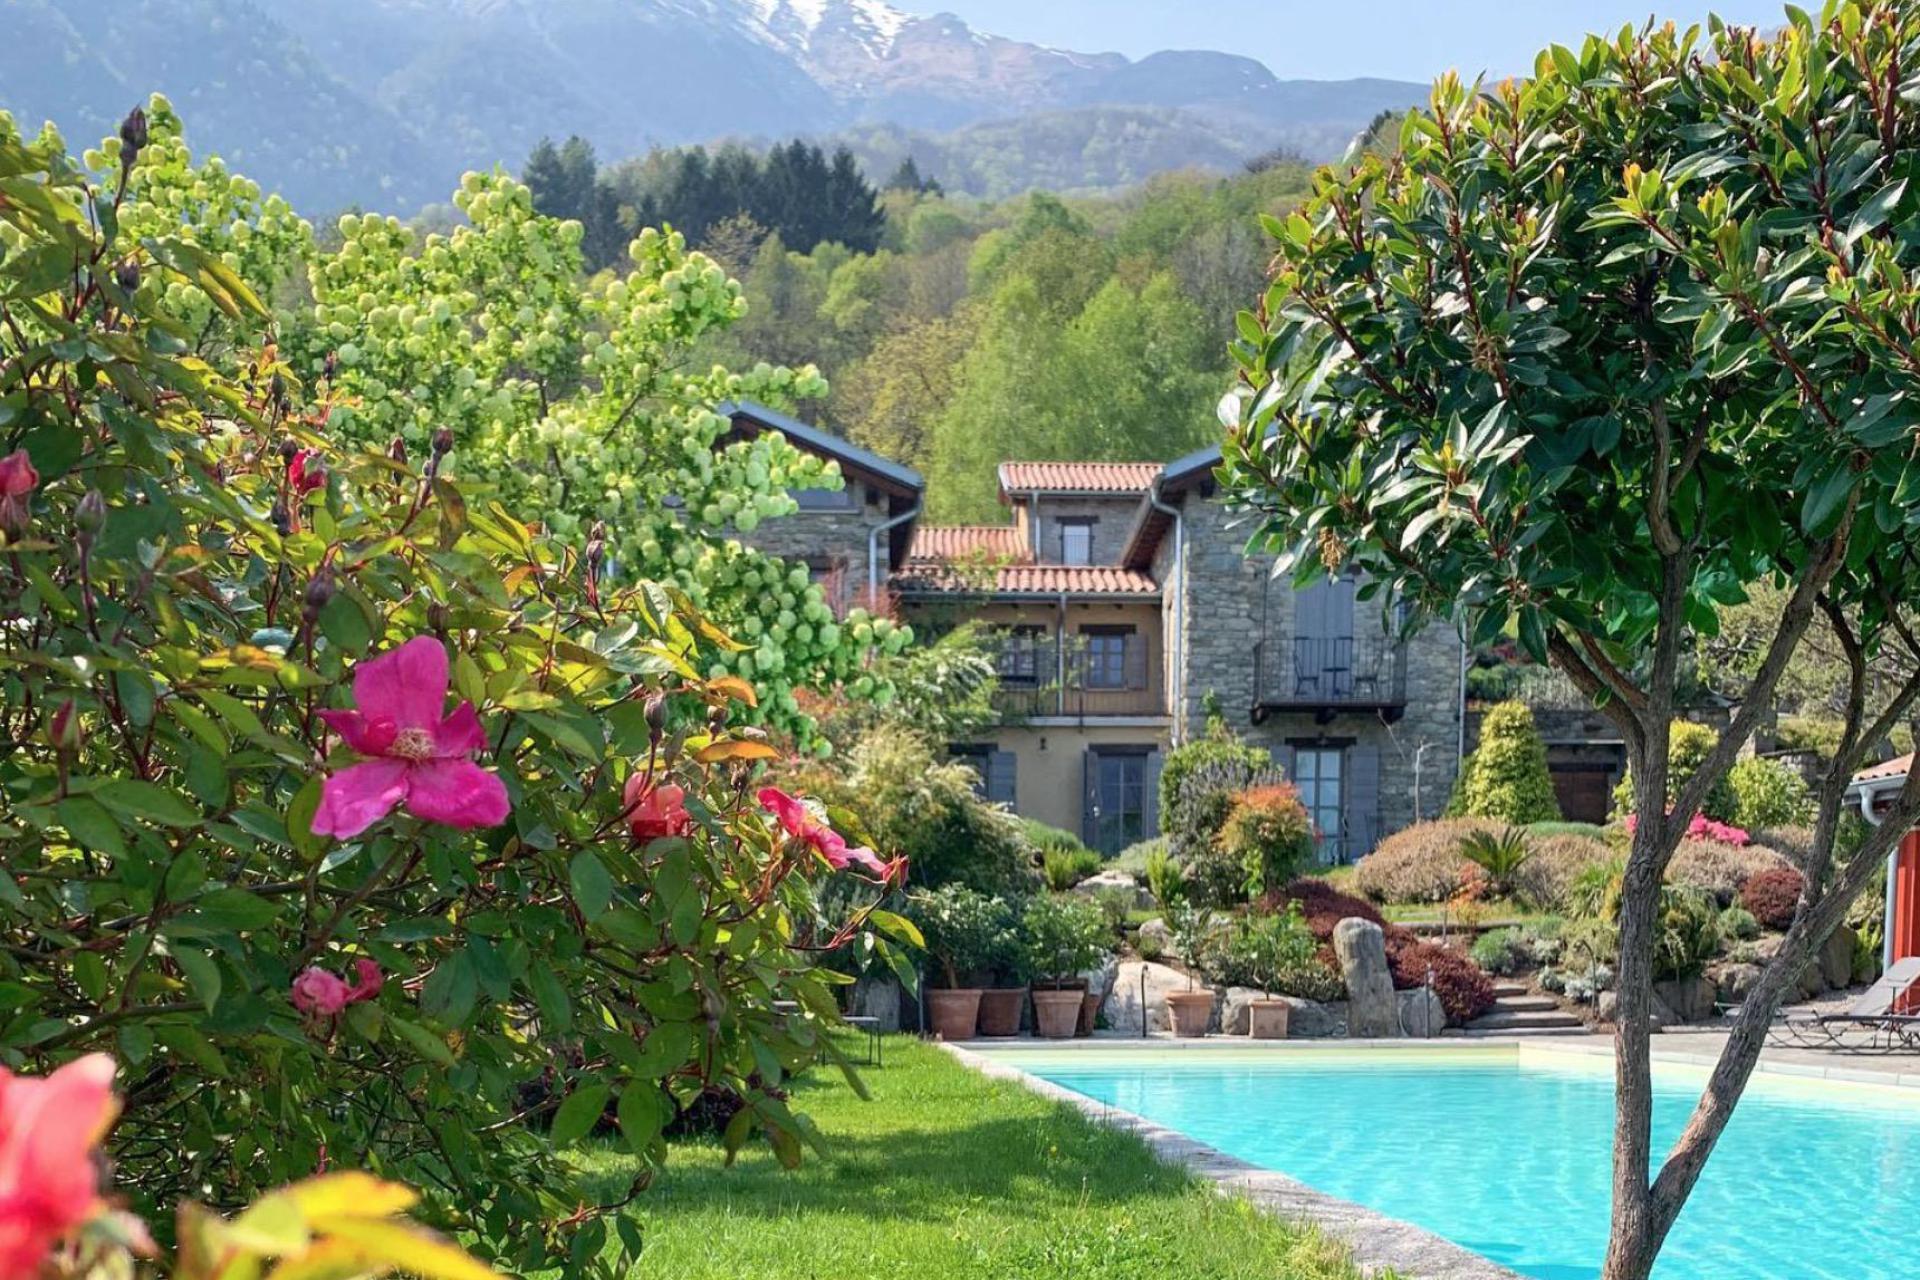 Agriturismo Lago di Como e lago di Garda Agriturismo di lusso, piscina vista lago di Como!